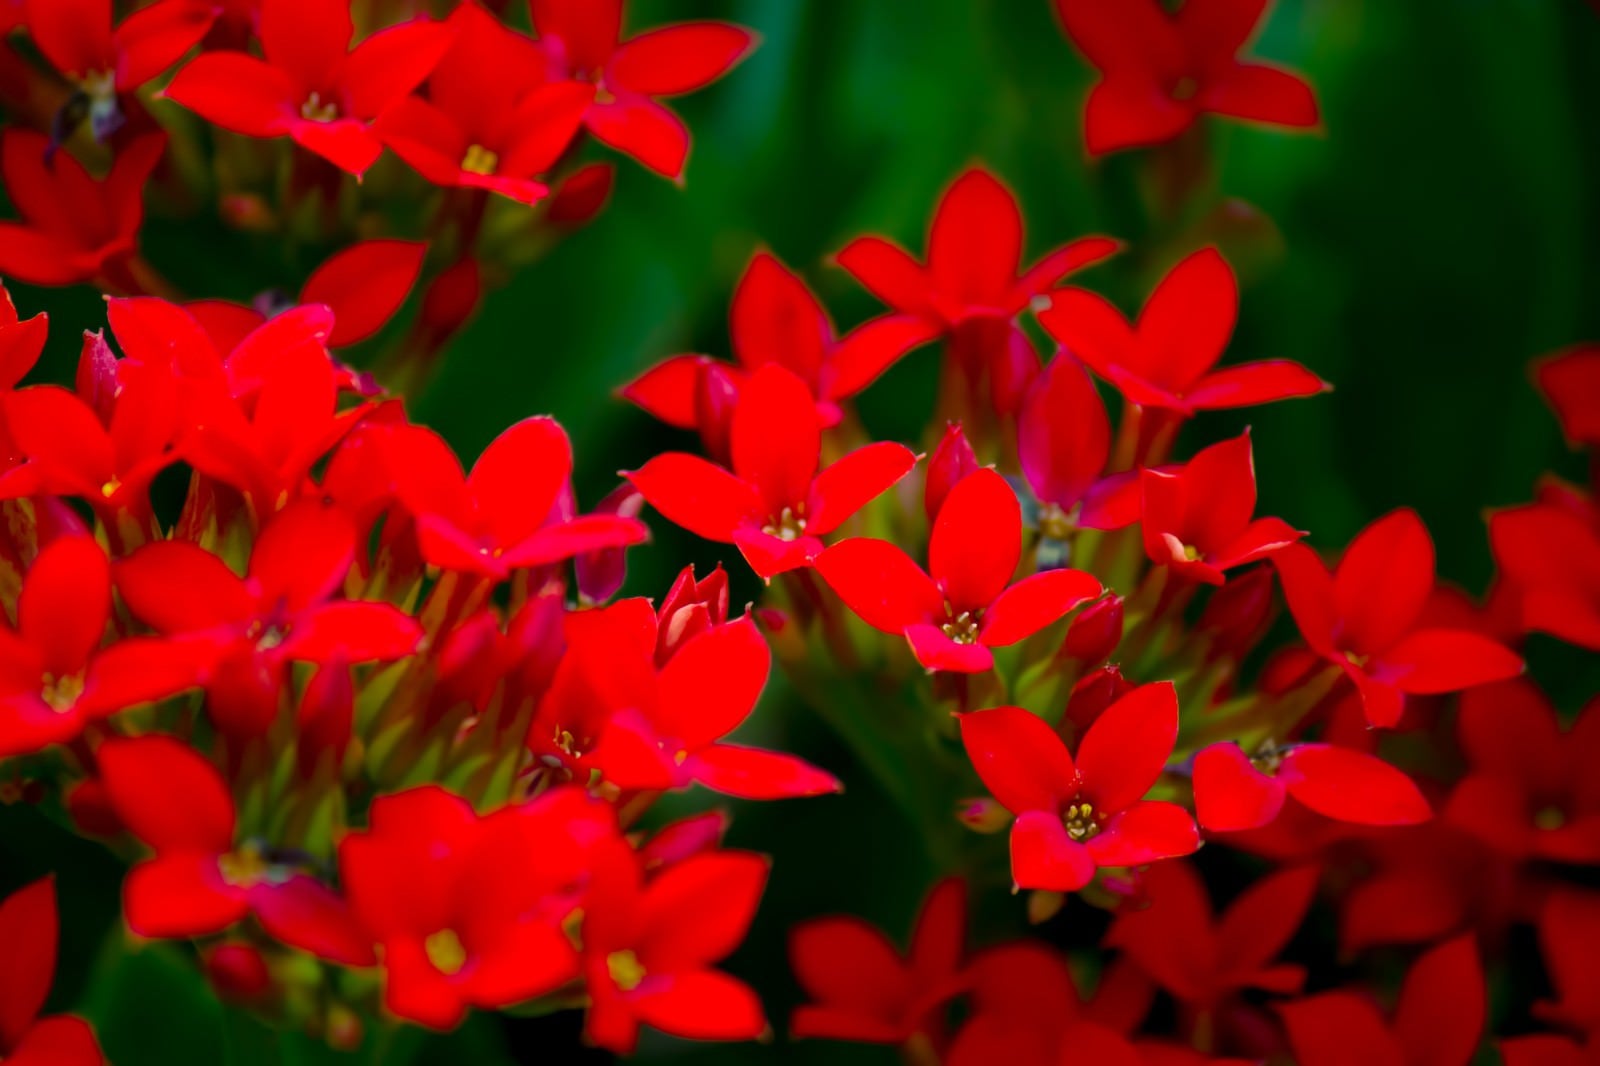 「小さい赤いお花達」の写真